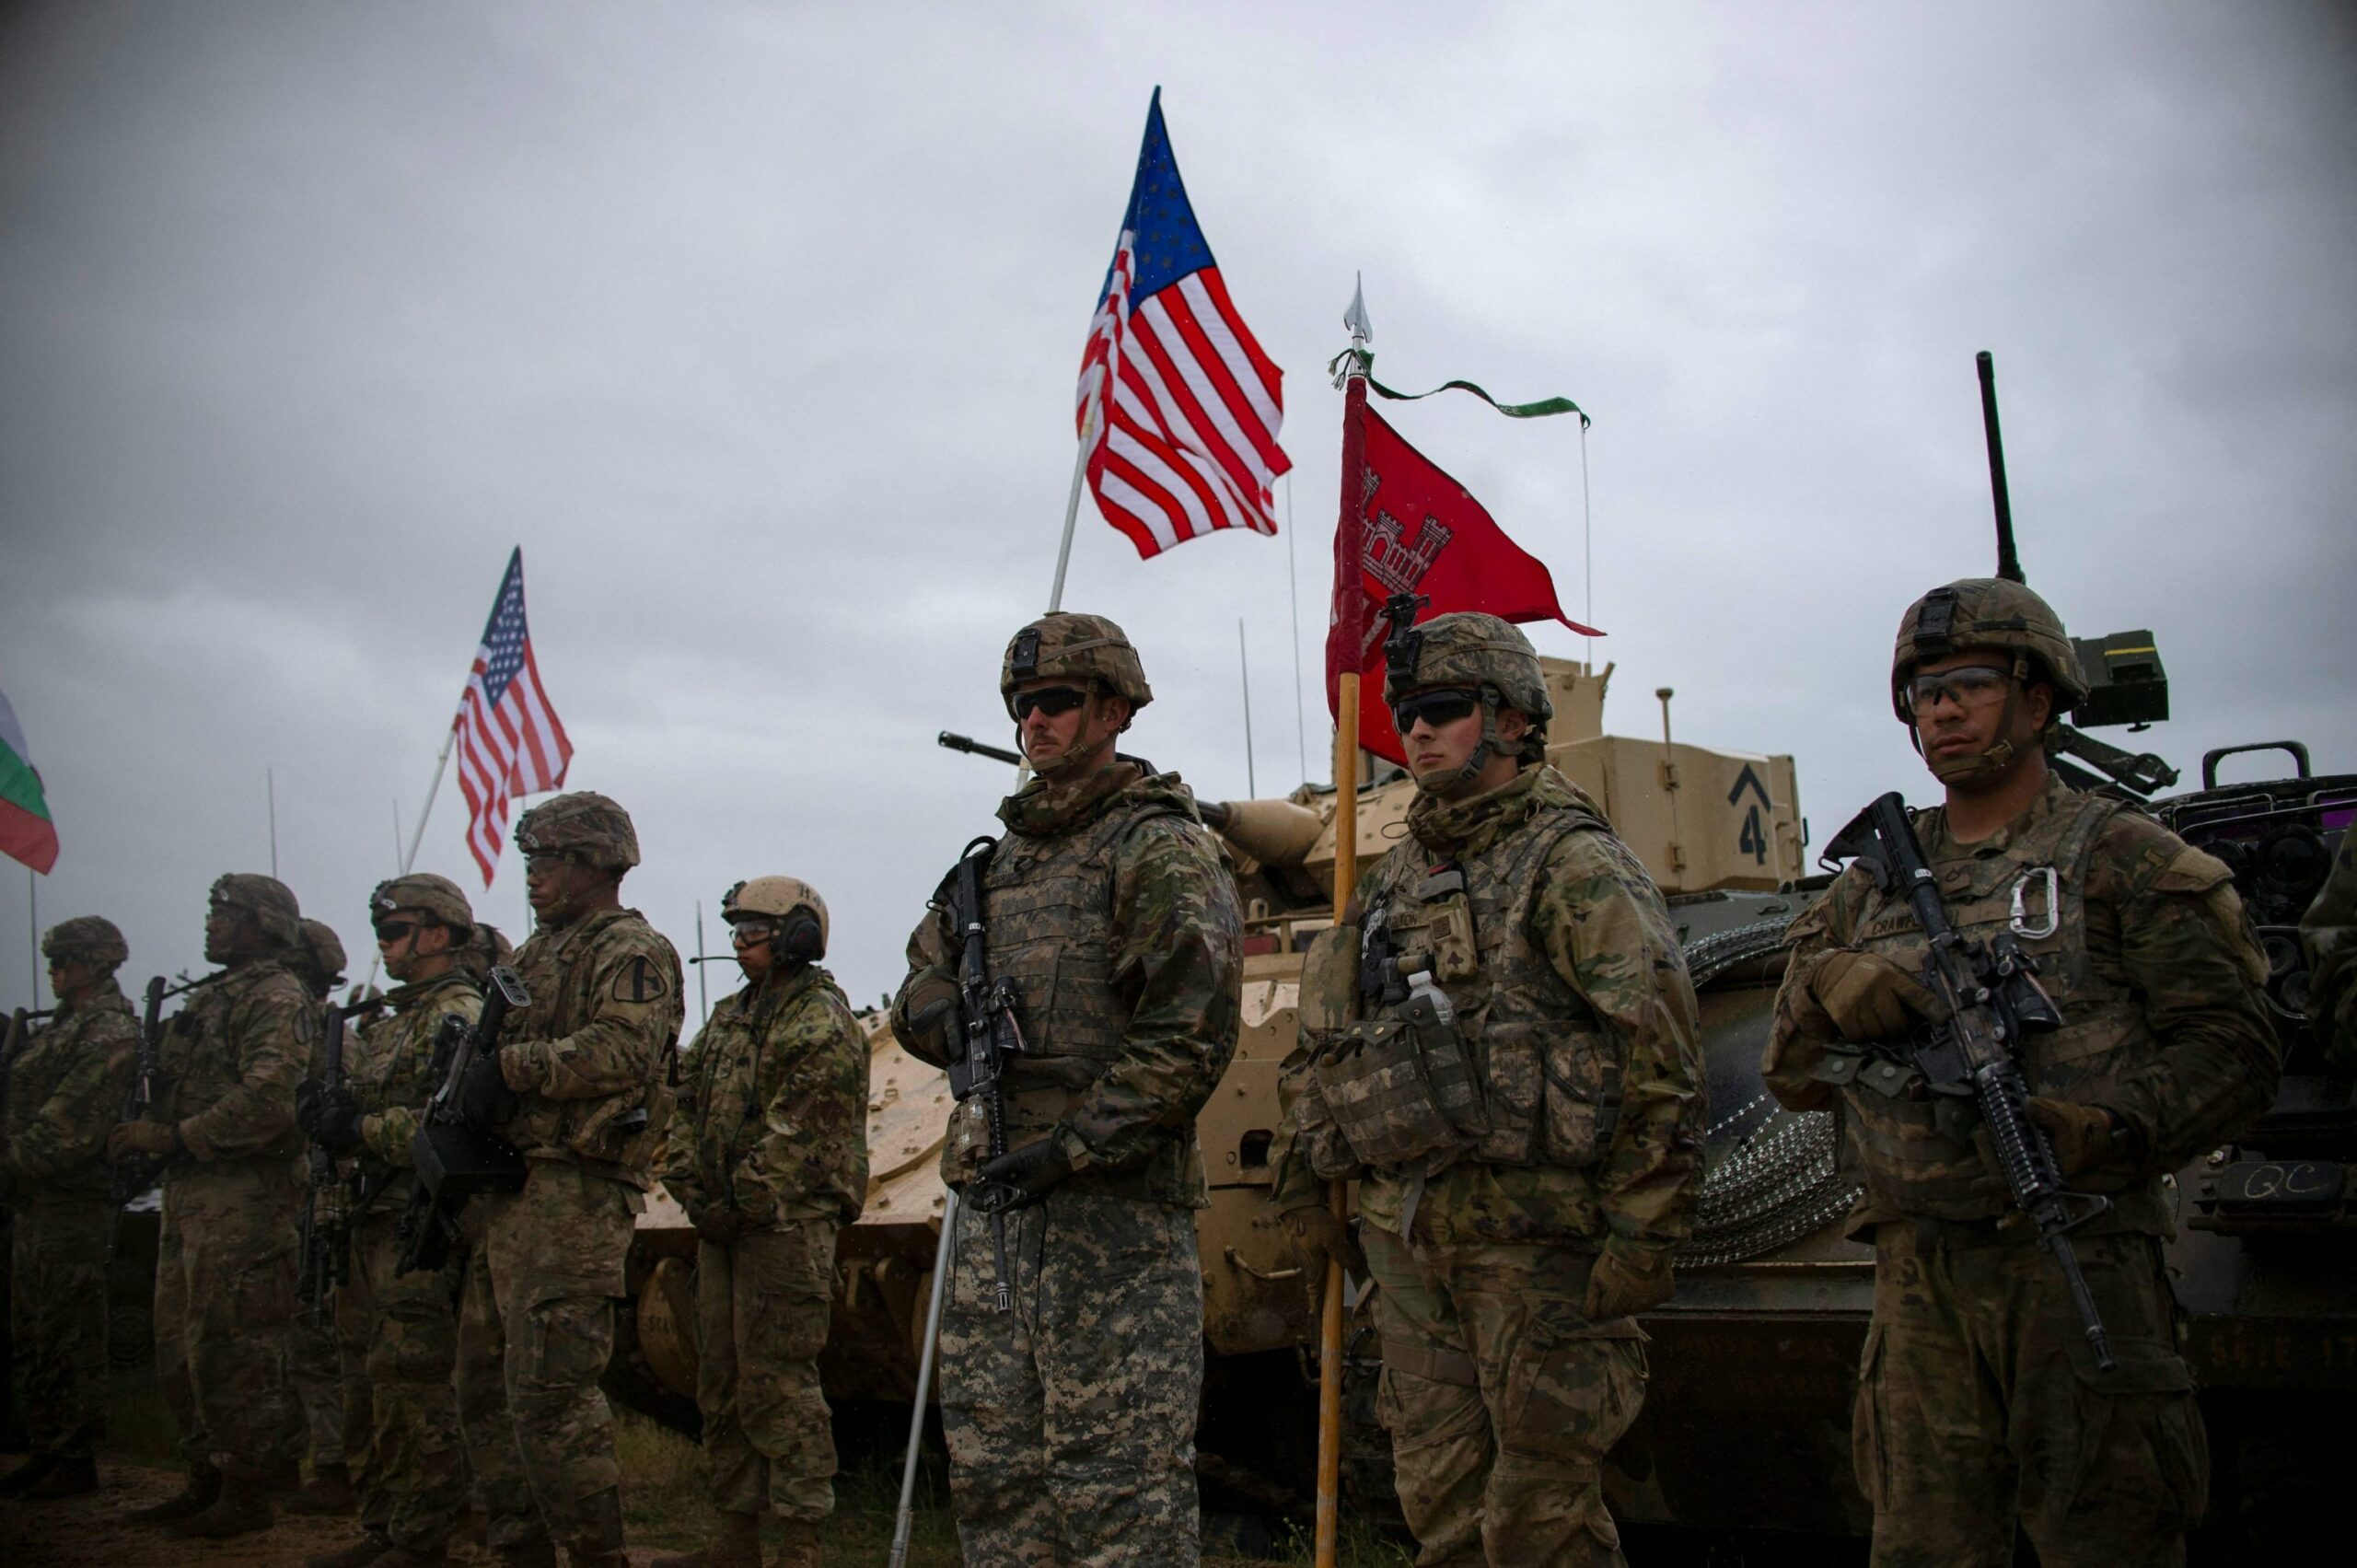 Οσμή πολέμου στην Ευρώπη. Οι ΗΠΑ αναπτύσσουν τον στρατό τους με το βλέμμα στην Ουκρανία